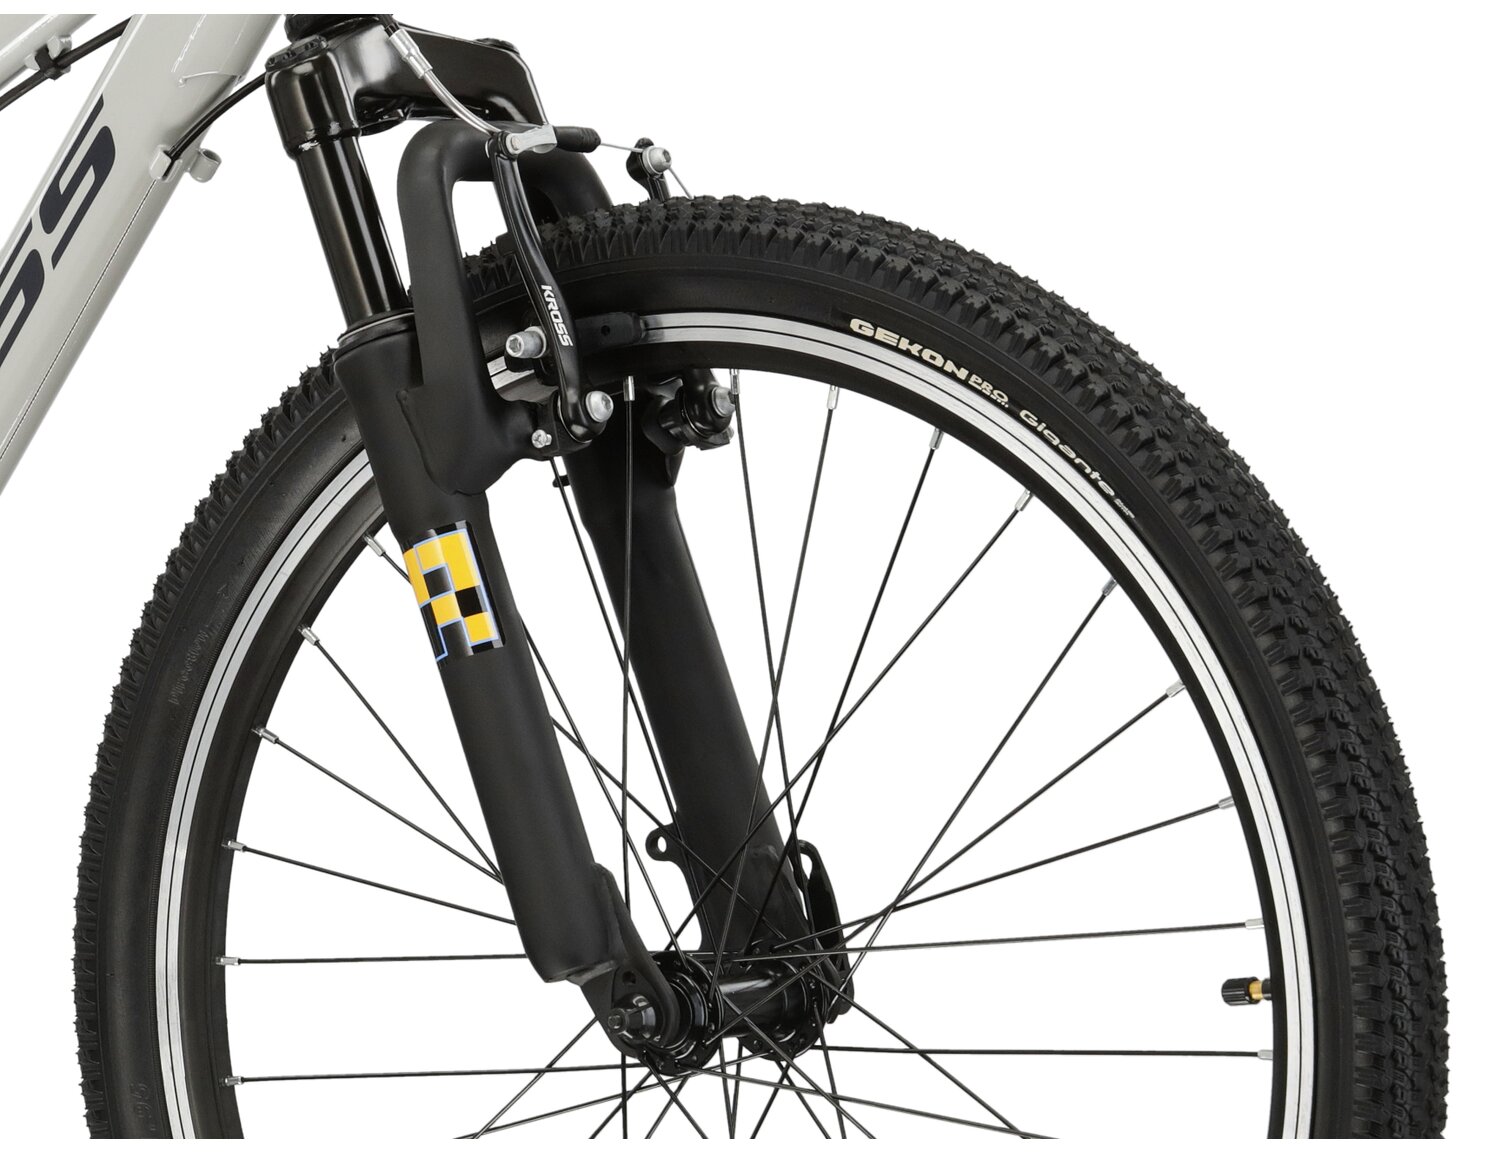  Aluminowa rama, amortyzowany widelec o skoku 50 mm oraz opony o szerokości 1,95 cala w rowerze juniorskim KROSS Dust JR 1.0 